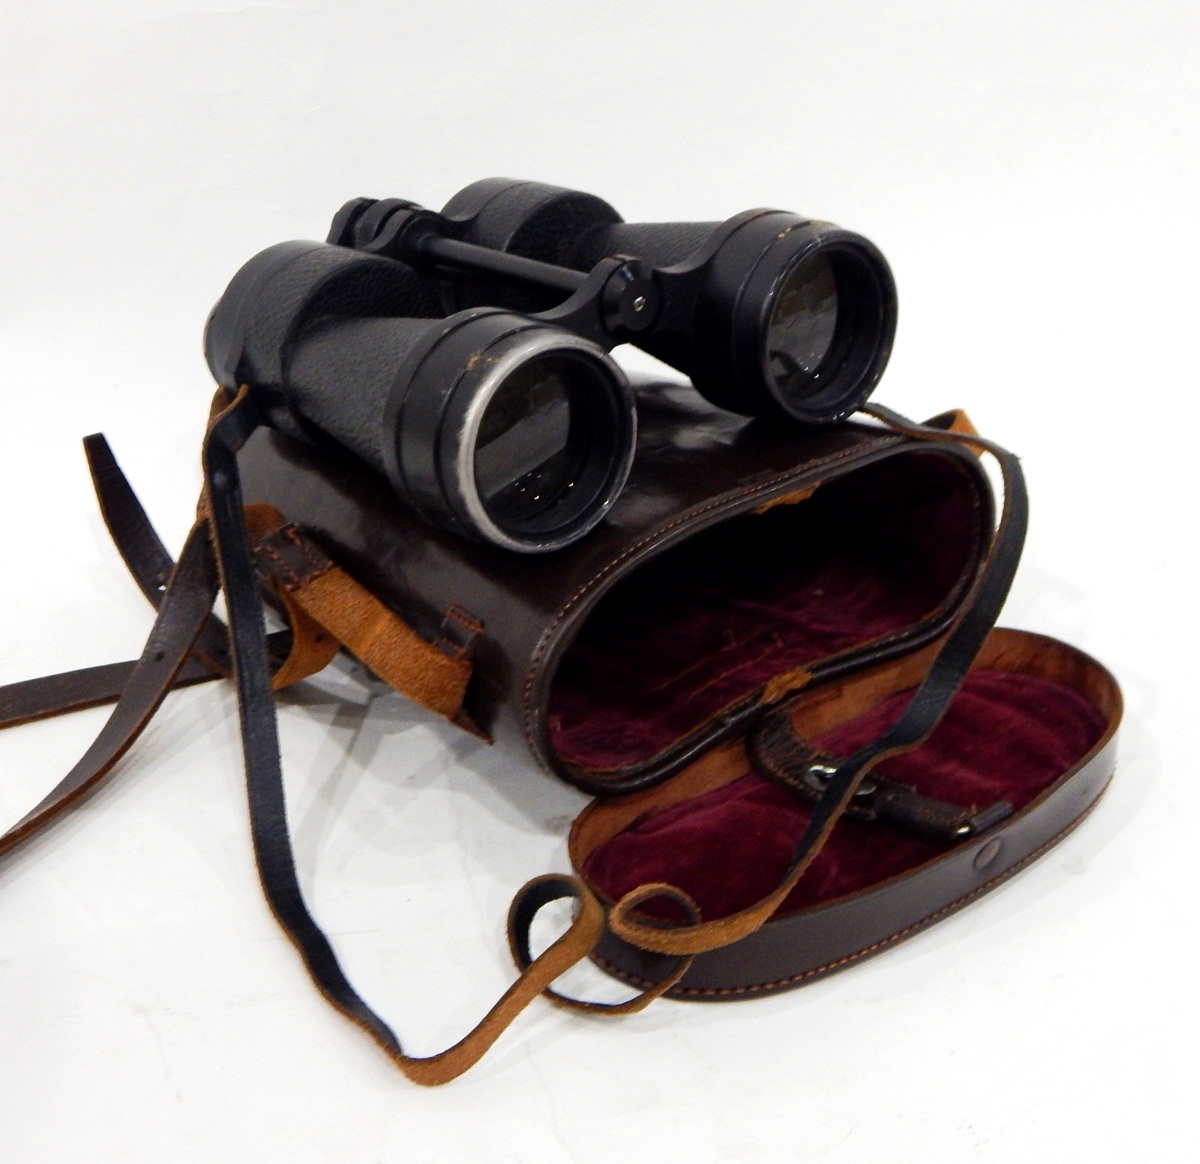 Pair of Ross of London Stepmur 10x50 binoculars in leather case, a pair of Prinz binoculars,